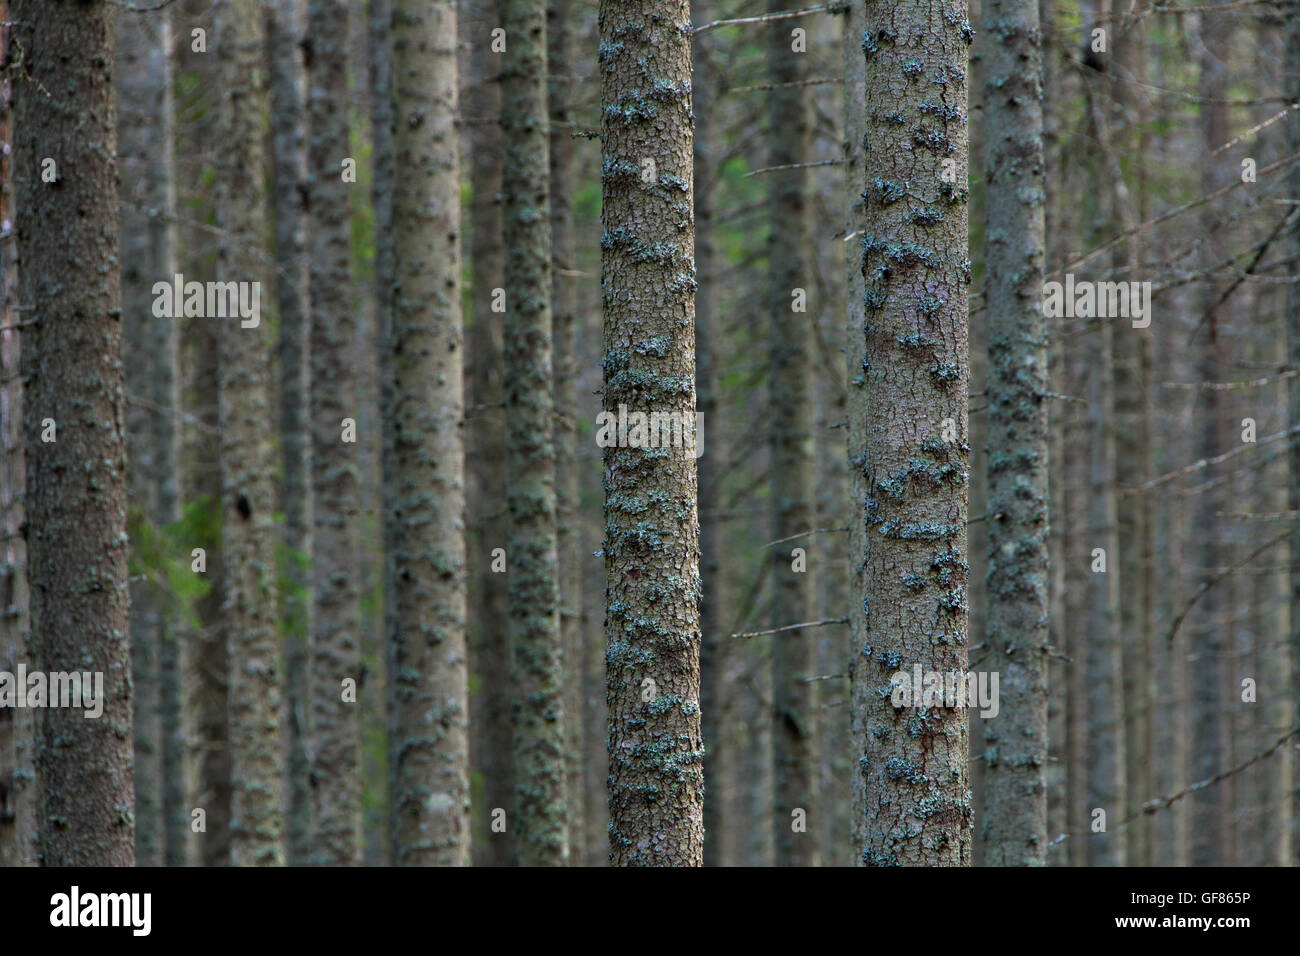 Norvegia abeti rossi / Europea abete rosso (Picea abies) tronchi di alberi coperti di licheni nella foresta di conifere Foto Stock